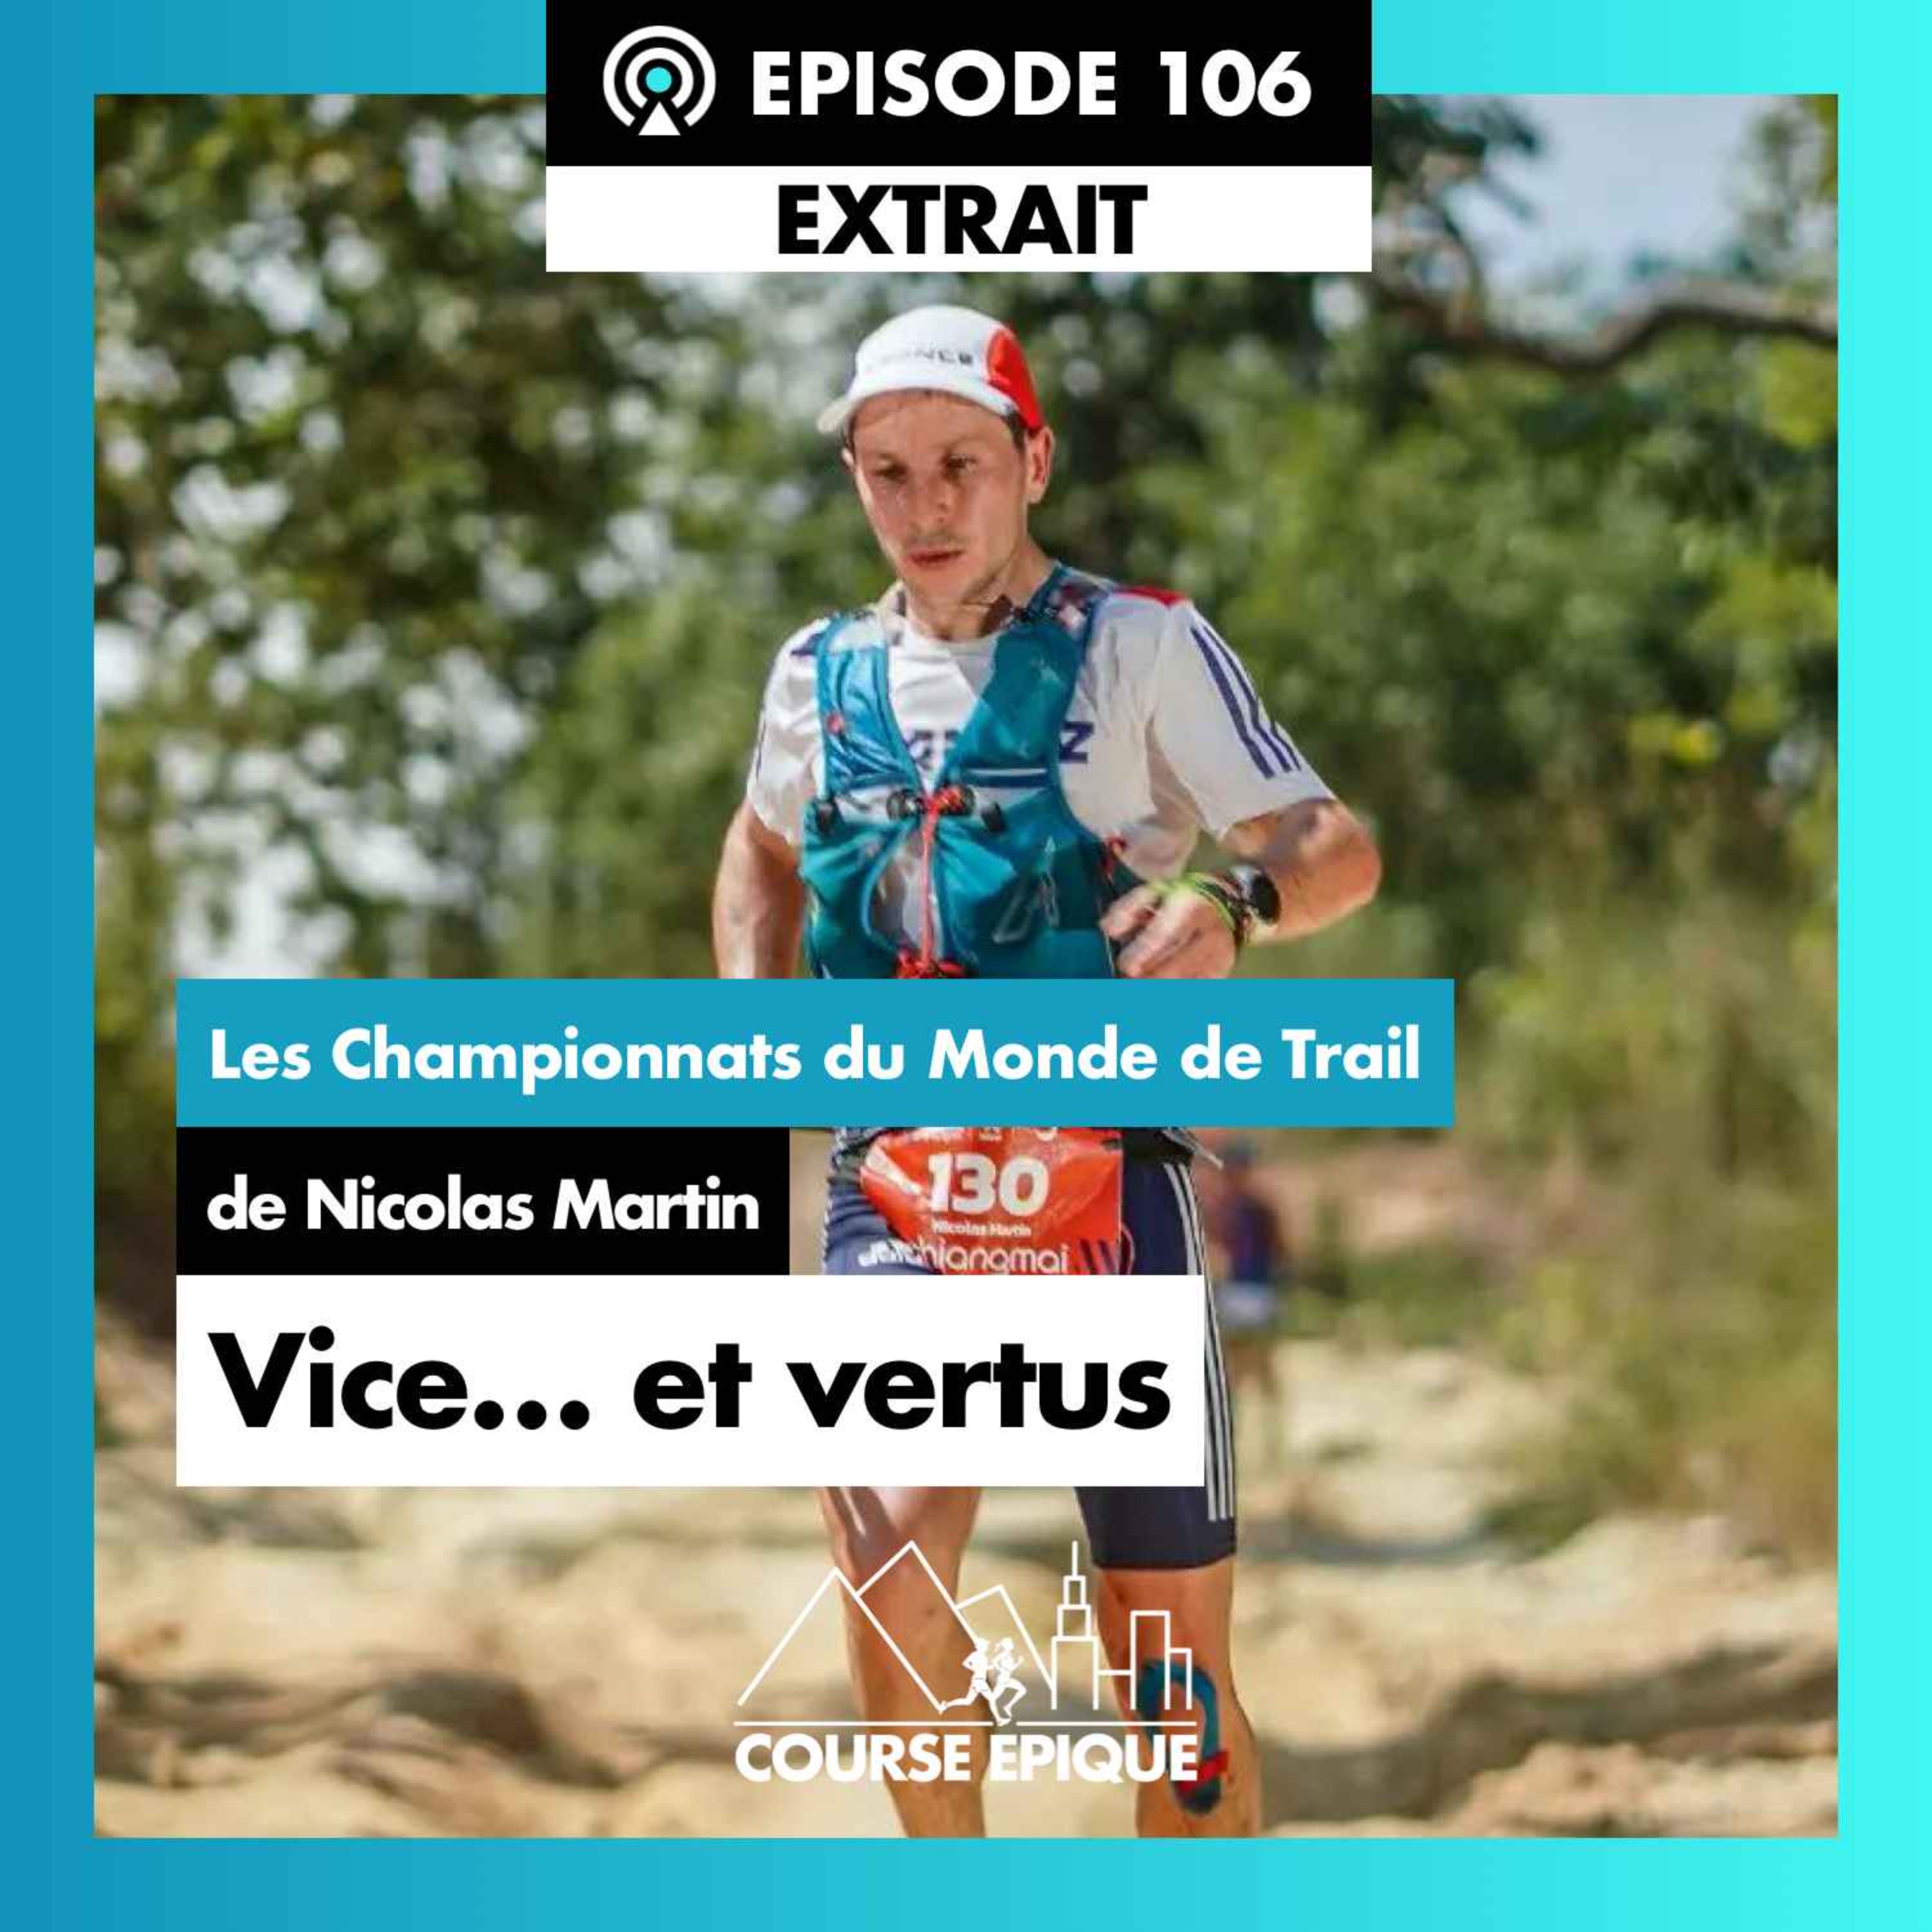 [EXTRAIT] Les Championnats du Monde de Trail de Nicolas Martin